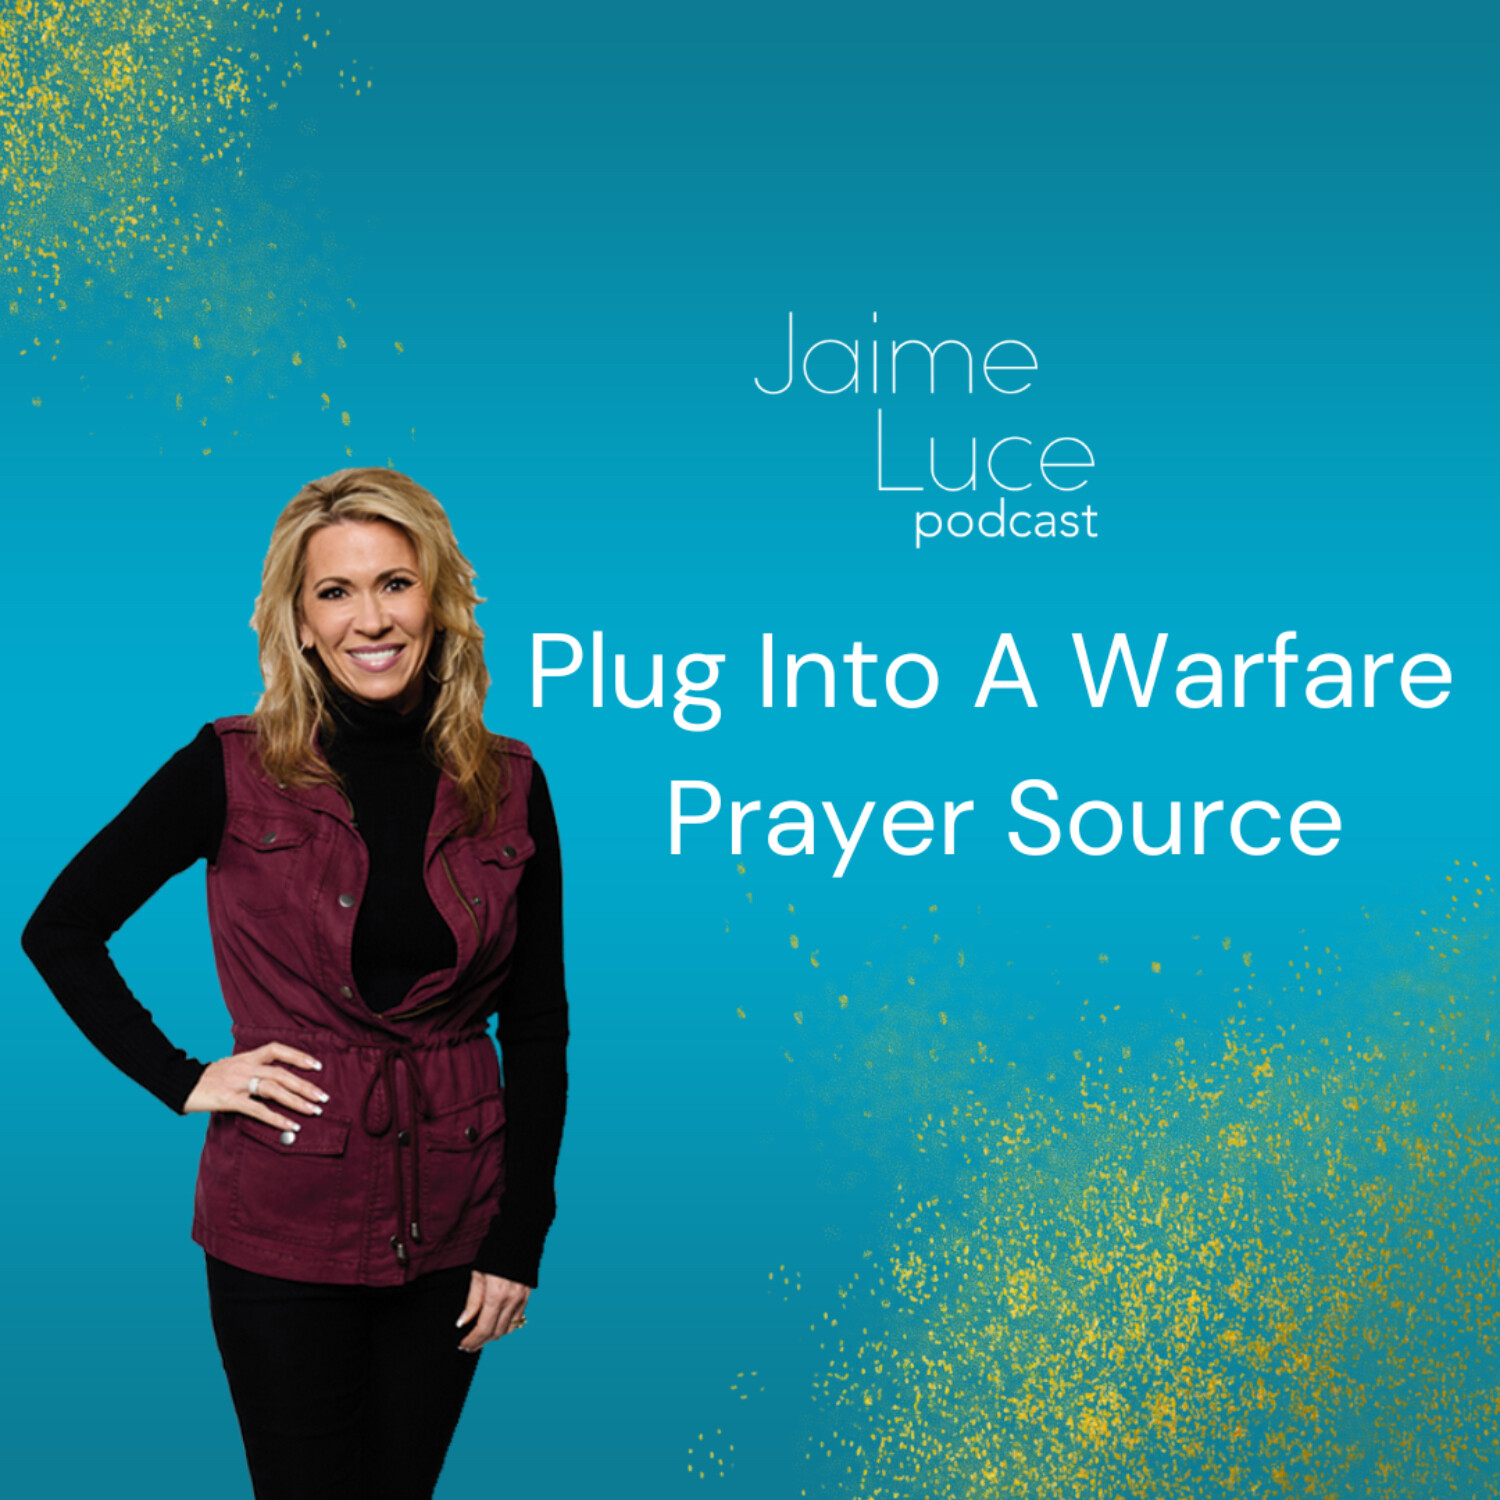 Plug Into A Warfare Prayer Source